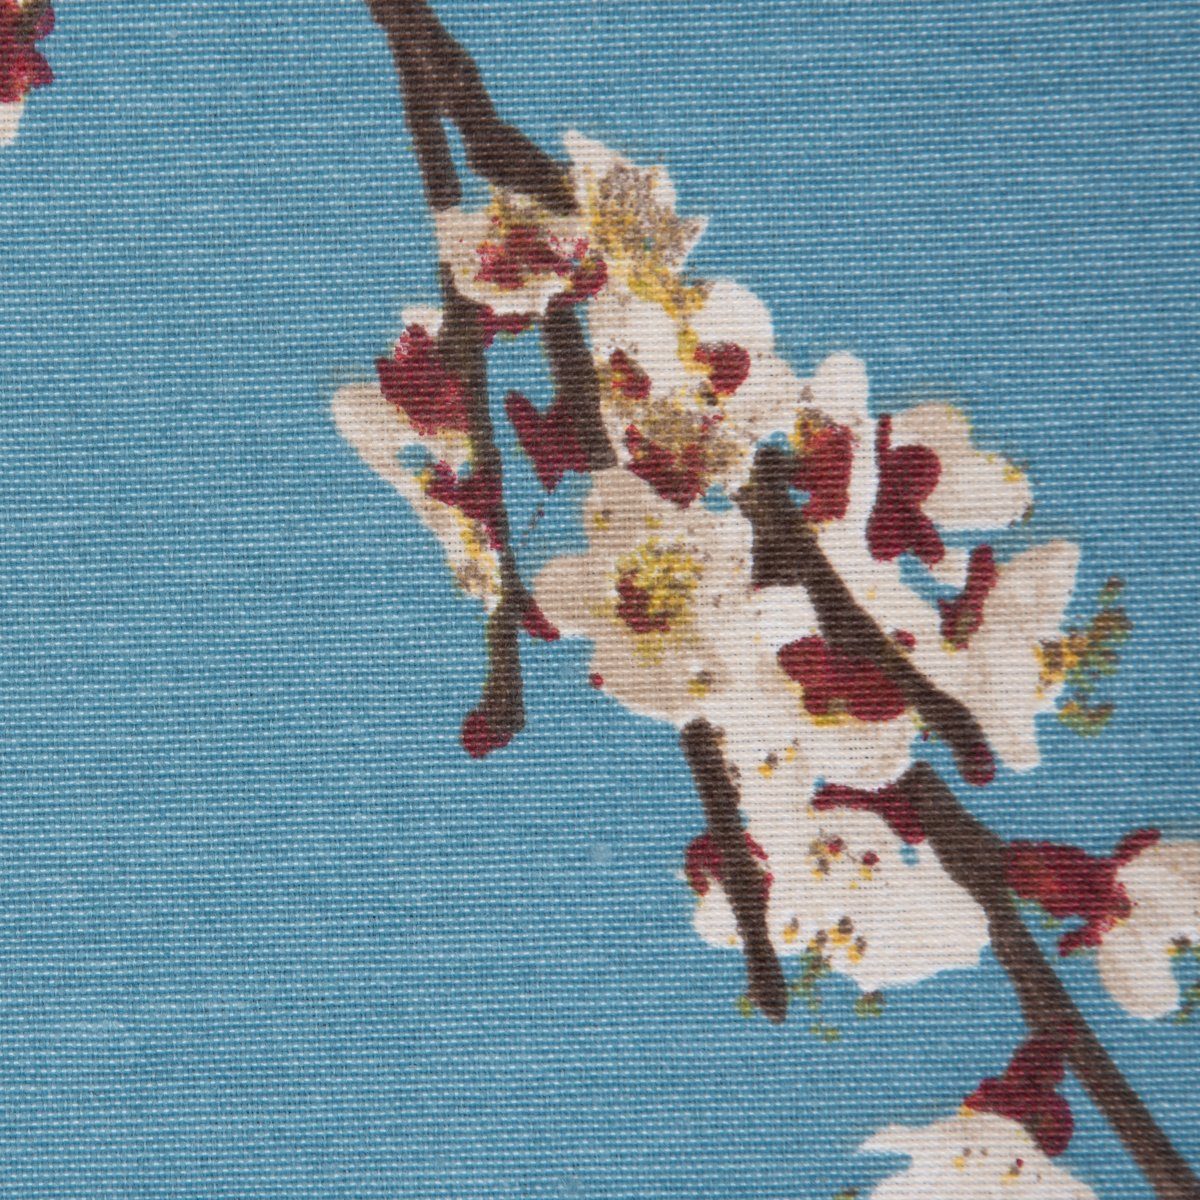 40x160cm, handmade SCHÖNER blau Tischläufer weiß Kirschblüten Tischläufer SCHÖNER braun LEBEN. LEBEN.